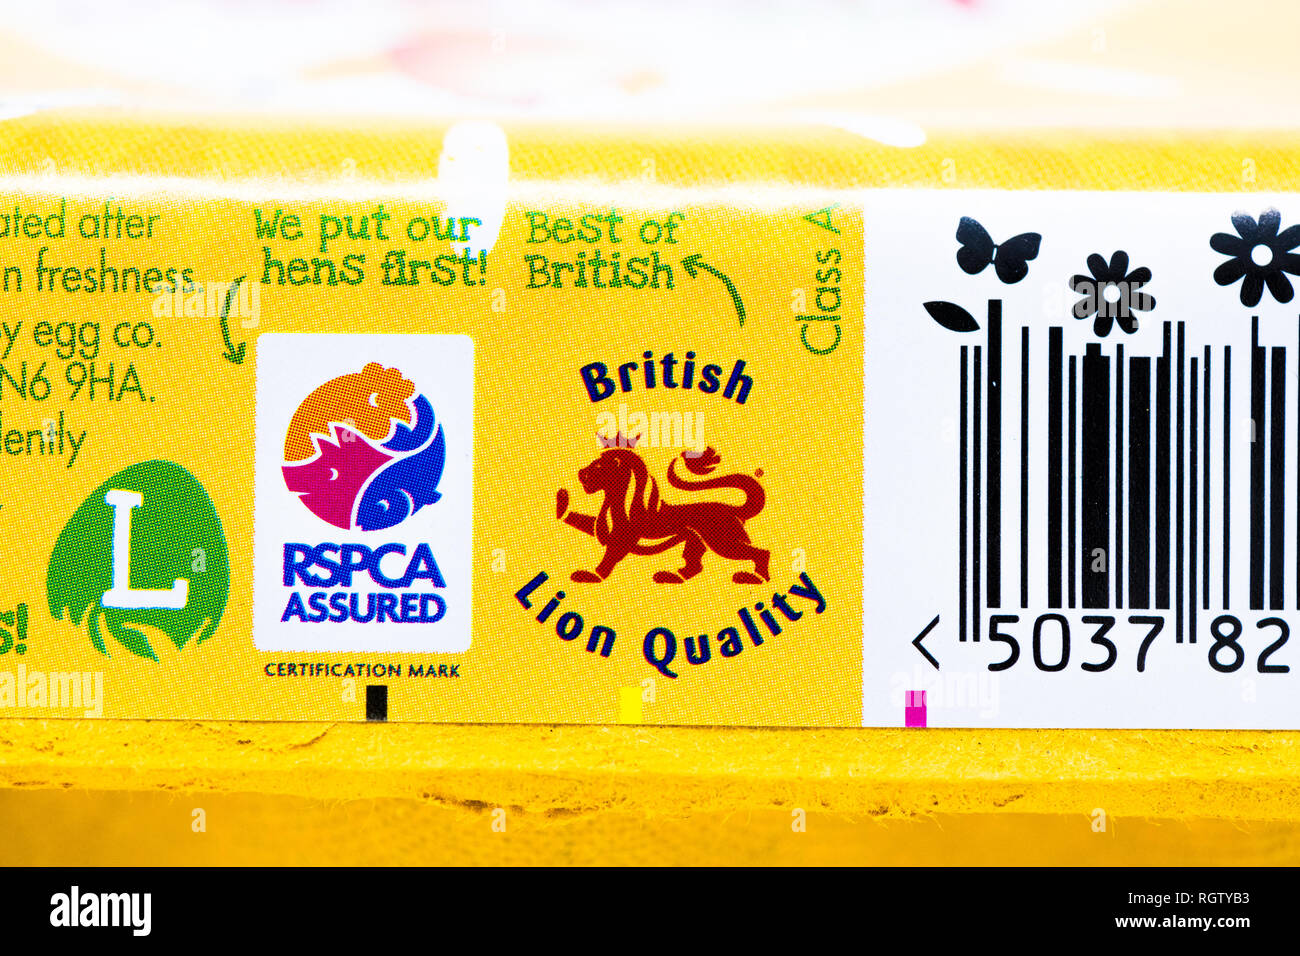 La felice uovo uovo co. scatola di cartone stampata con il British Lion la qualità e l'RSPCA assicurato logo. Foto Stock